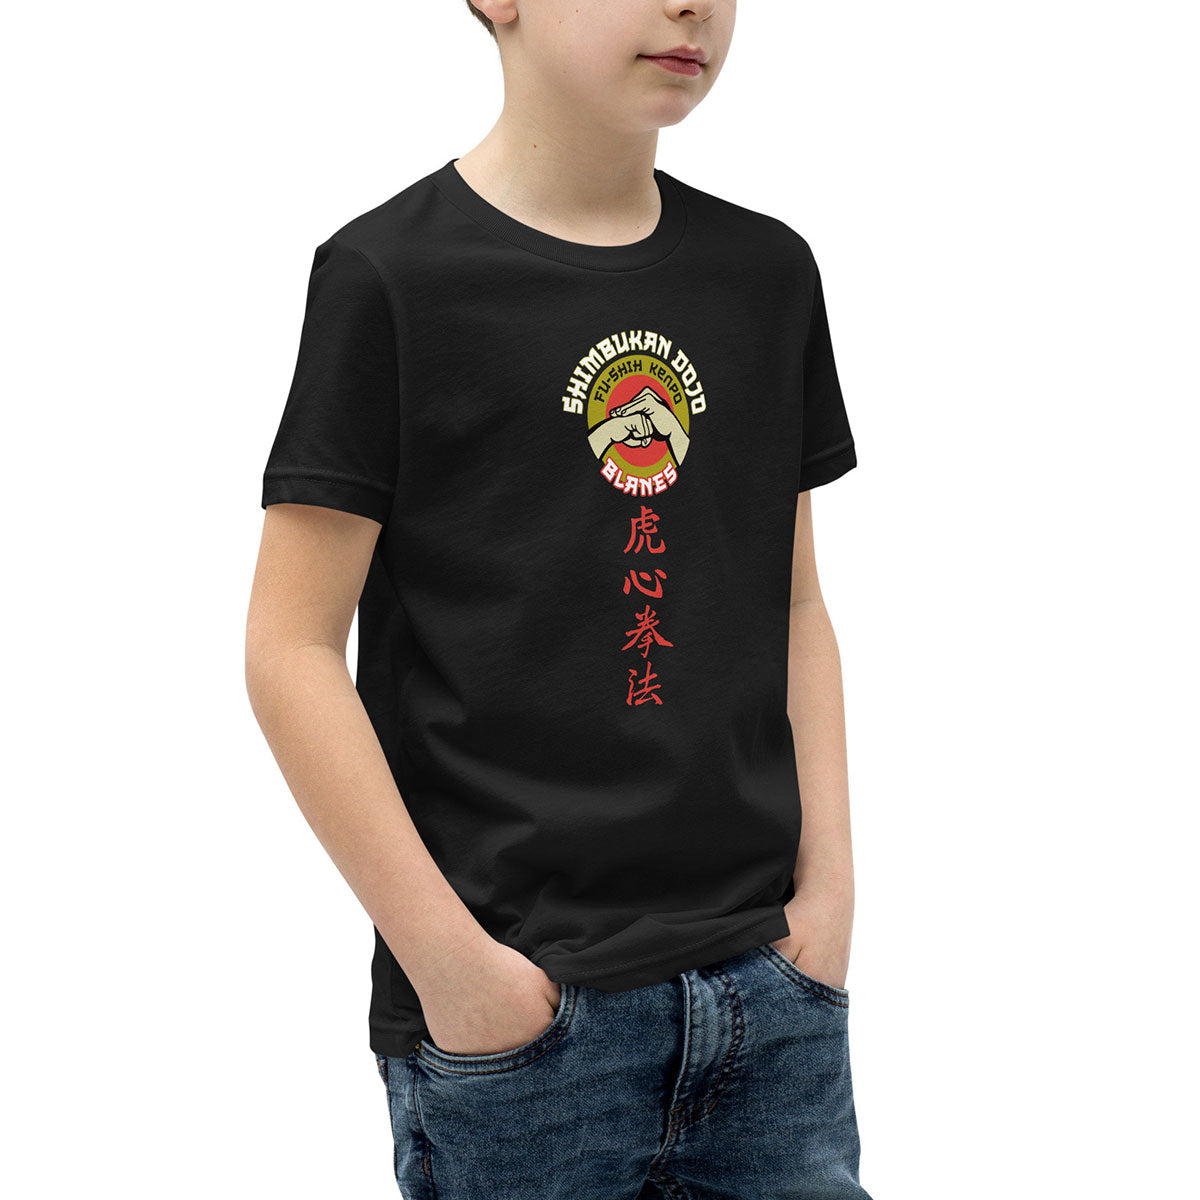 SHIMBUKAN DOJO · Camiseta m/corta·Adolescente/Unisex · Medium·Black-292c3f